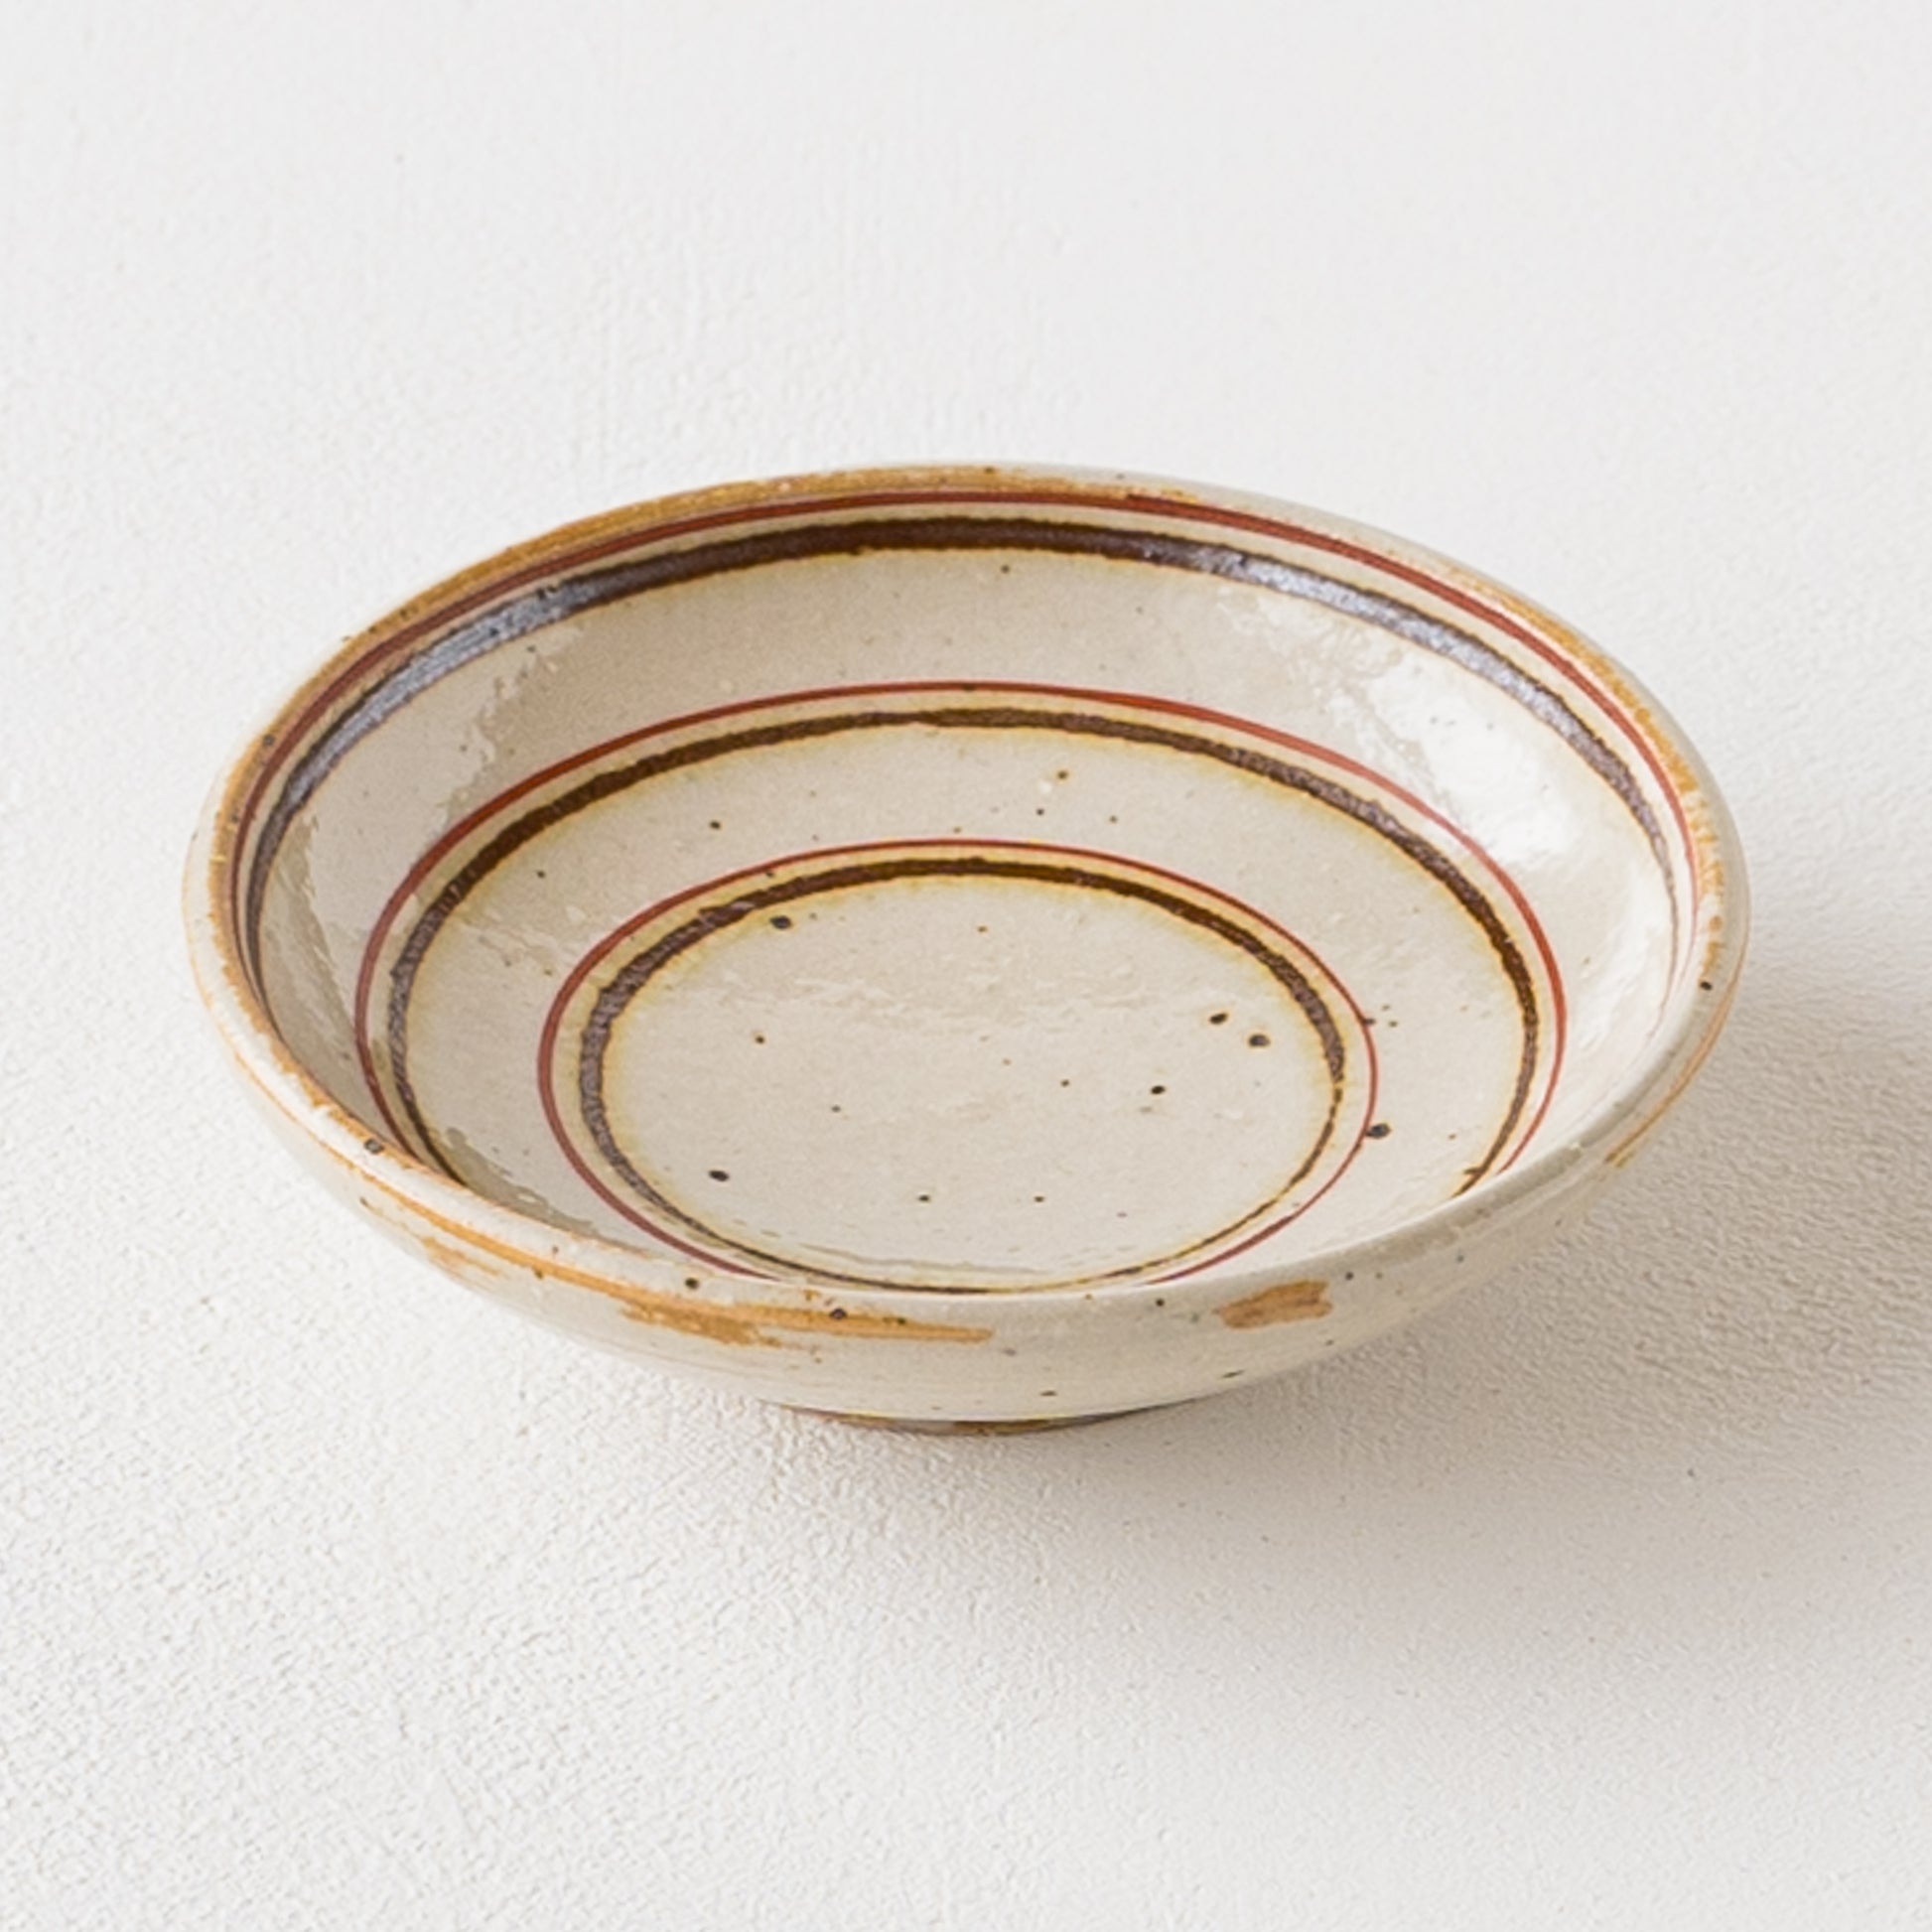 ちょこっとおかずの盛り付けにぴったりな冨本大輔さんの灰釉絵付3寸皿